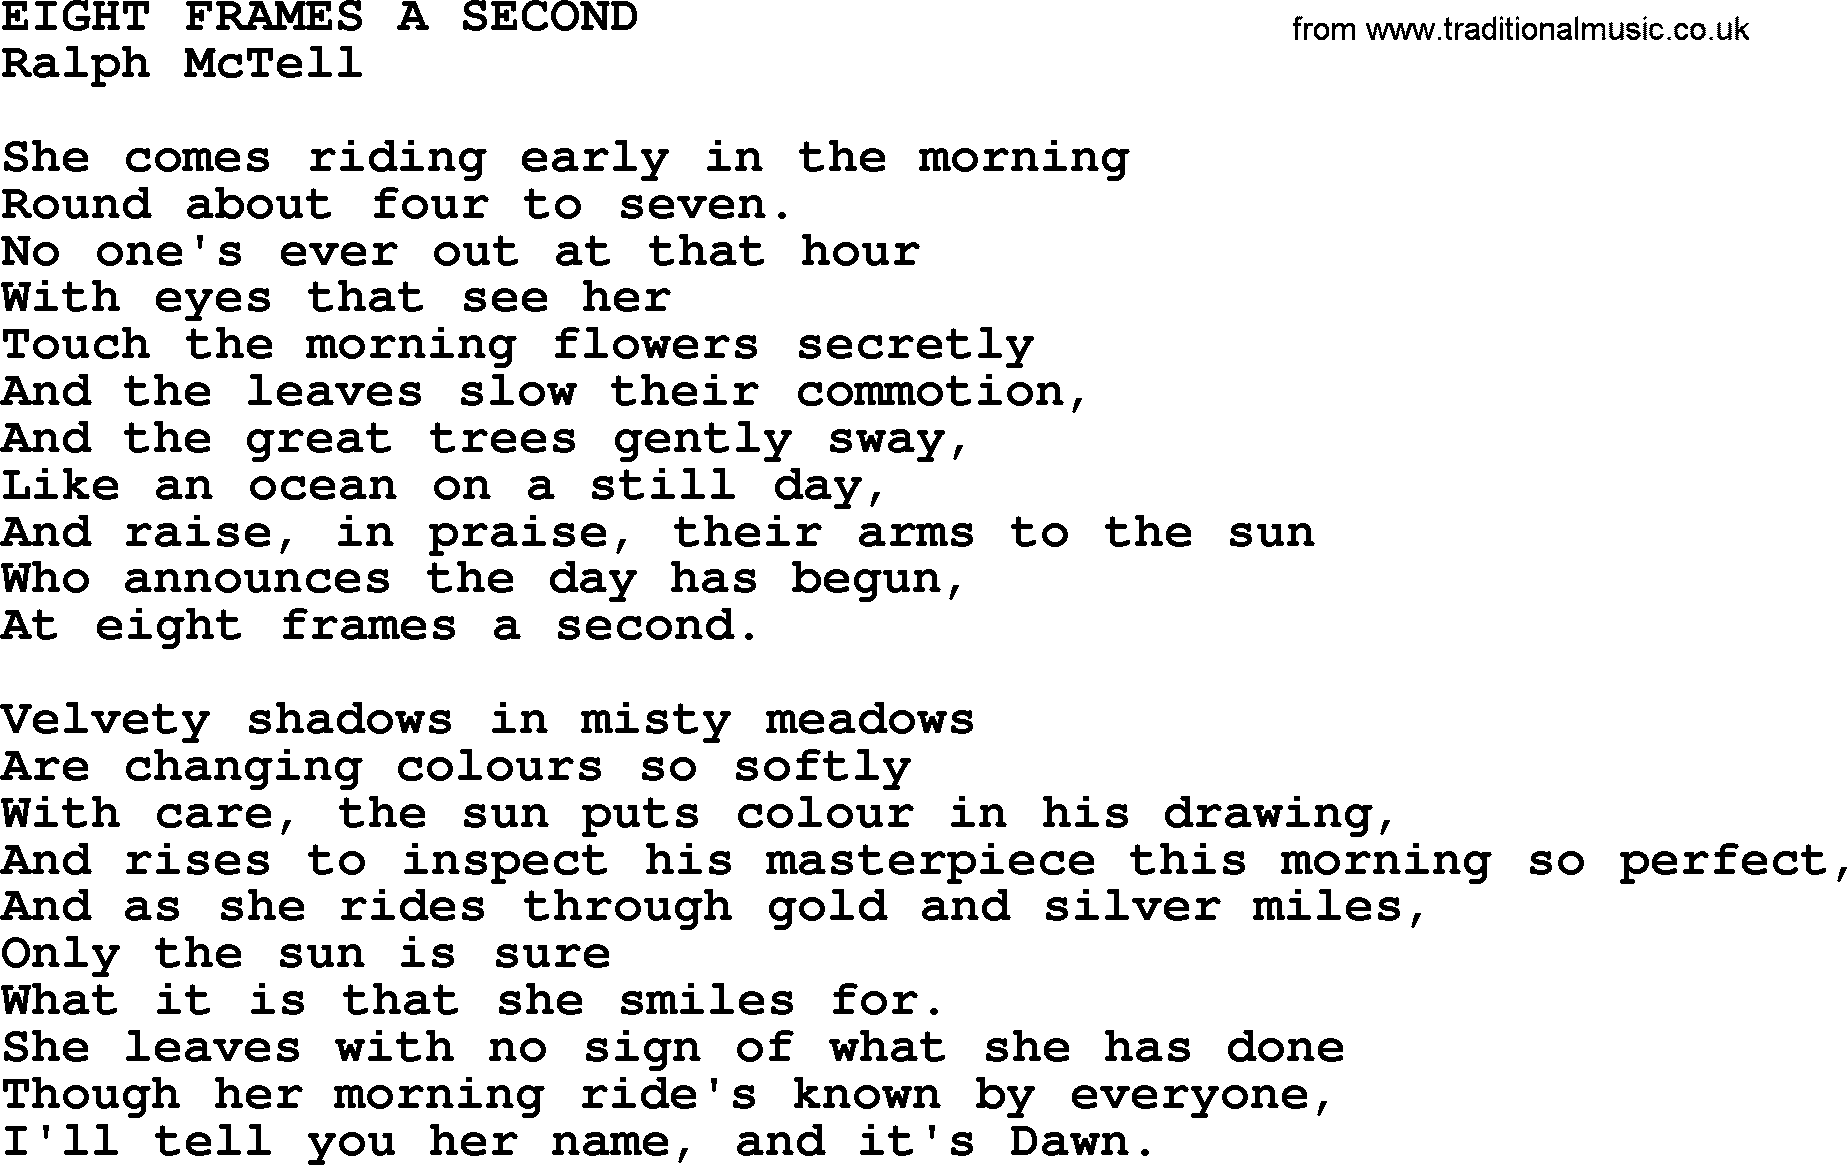 Ralph McTell Song: Eight Frames A Second, lyrics